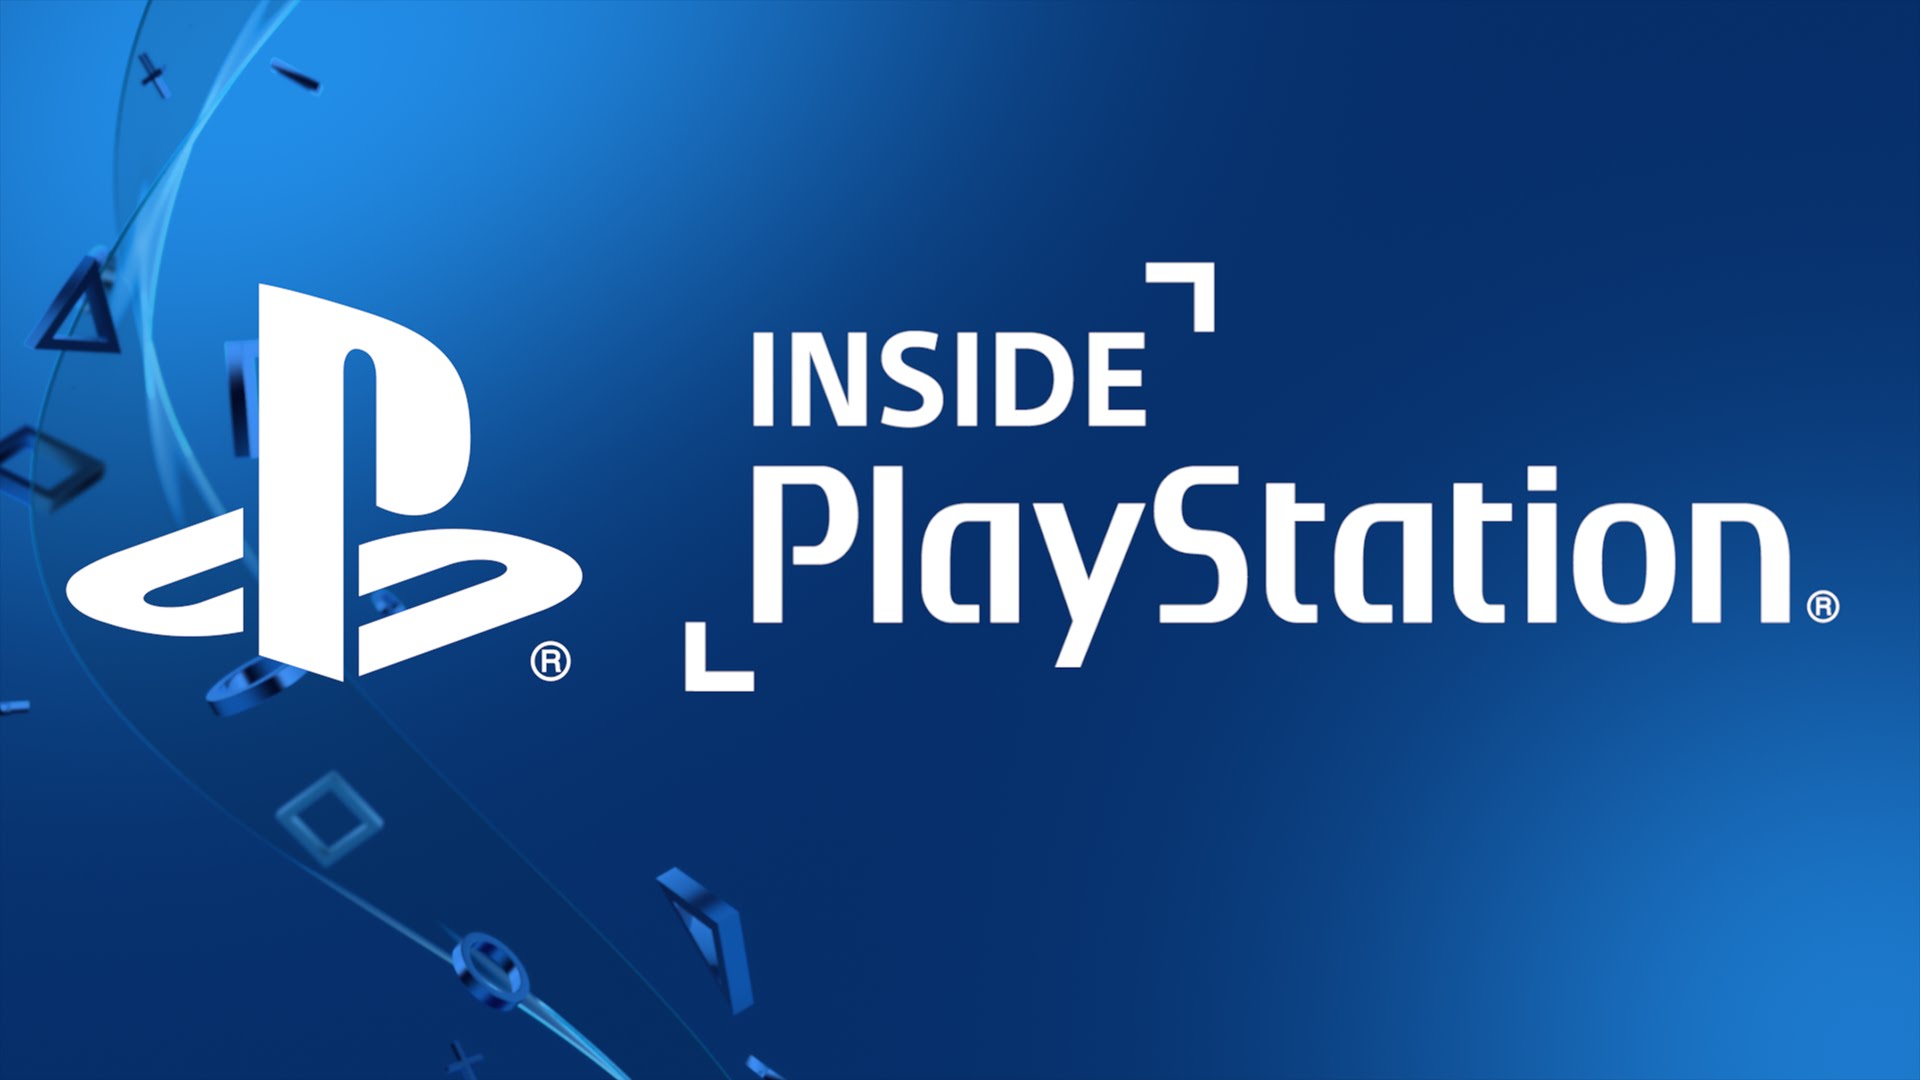 Inside PlayStation: Neues offizielles Videoformat von Sony